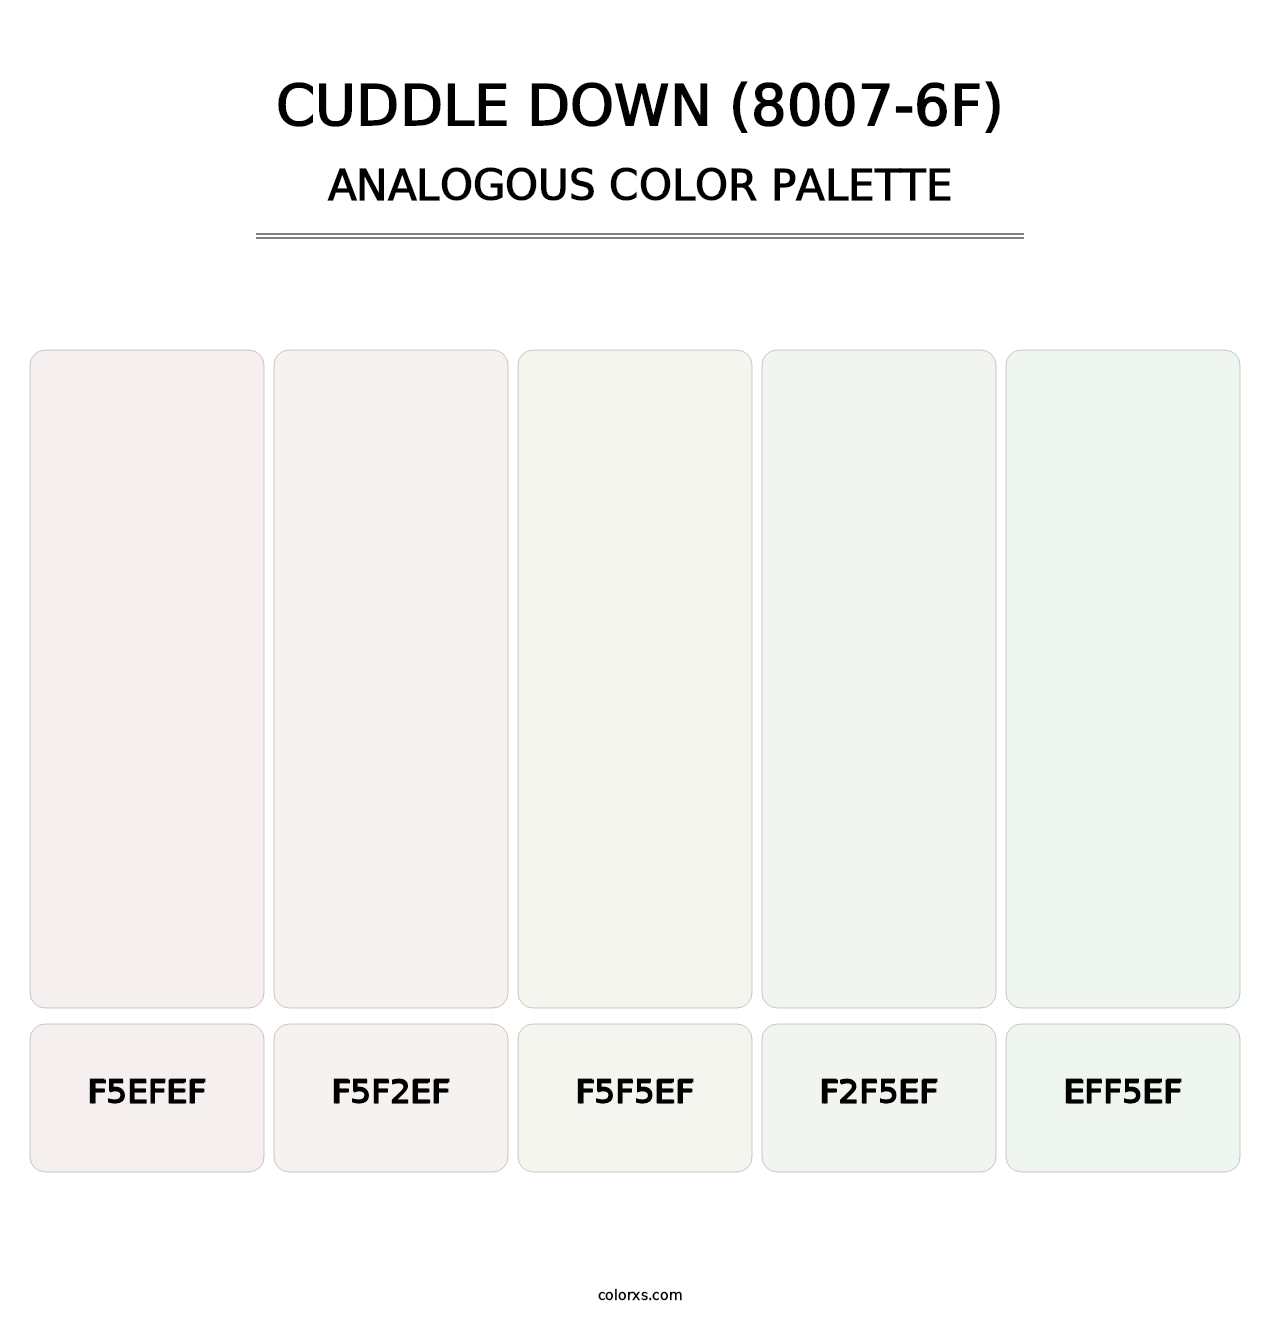 Cuddle Down (8007-6F) - Analogous Color Palette